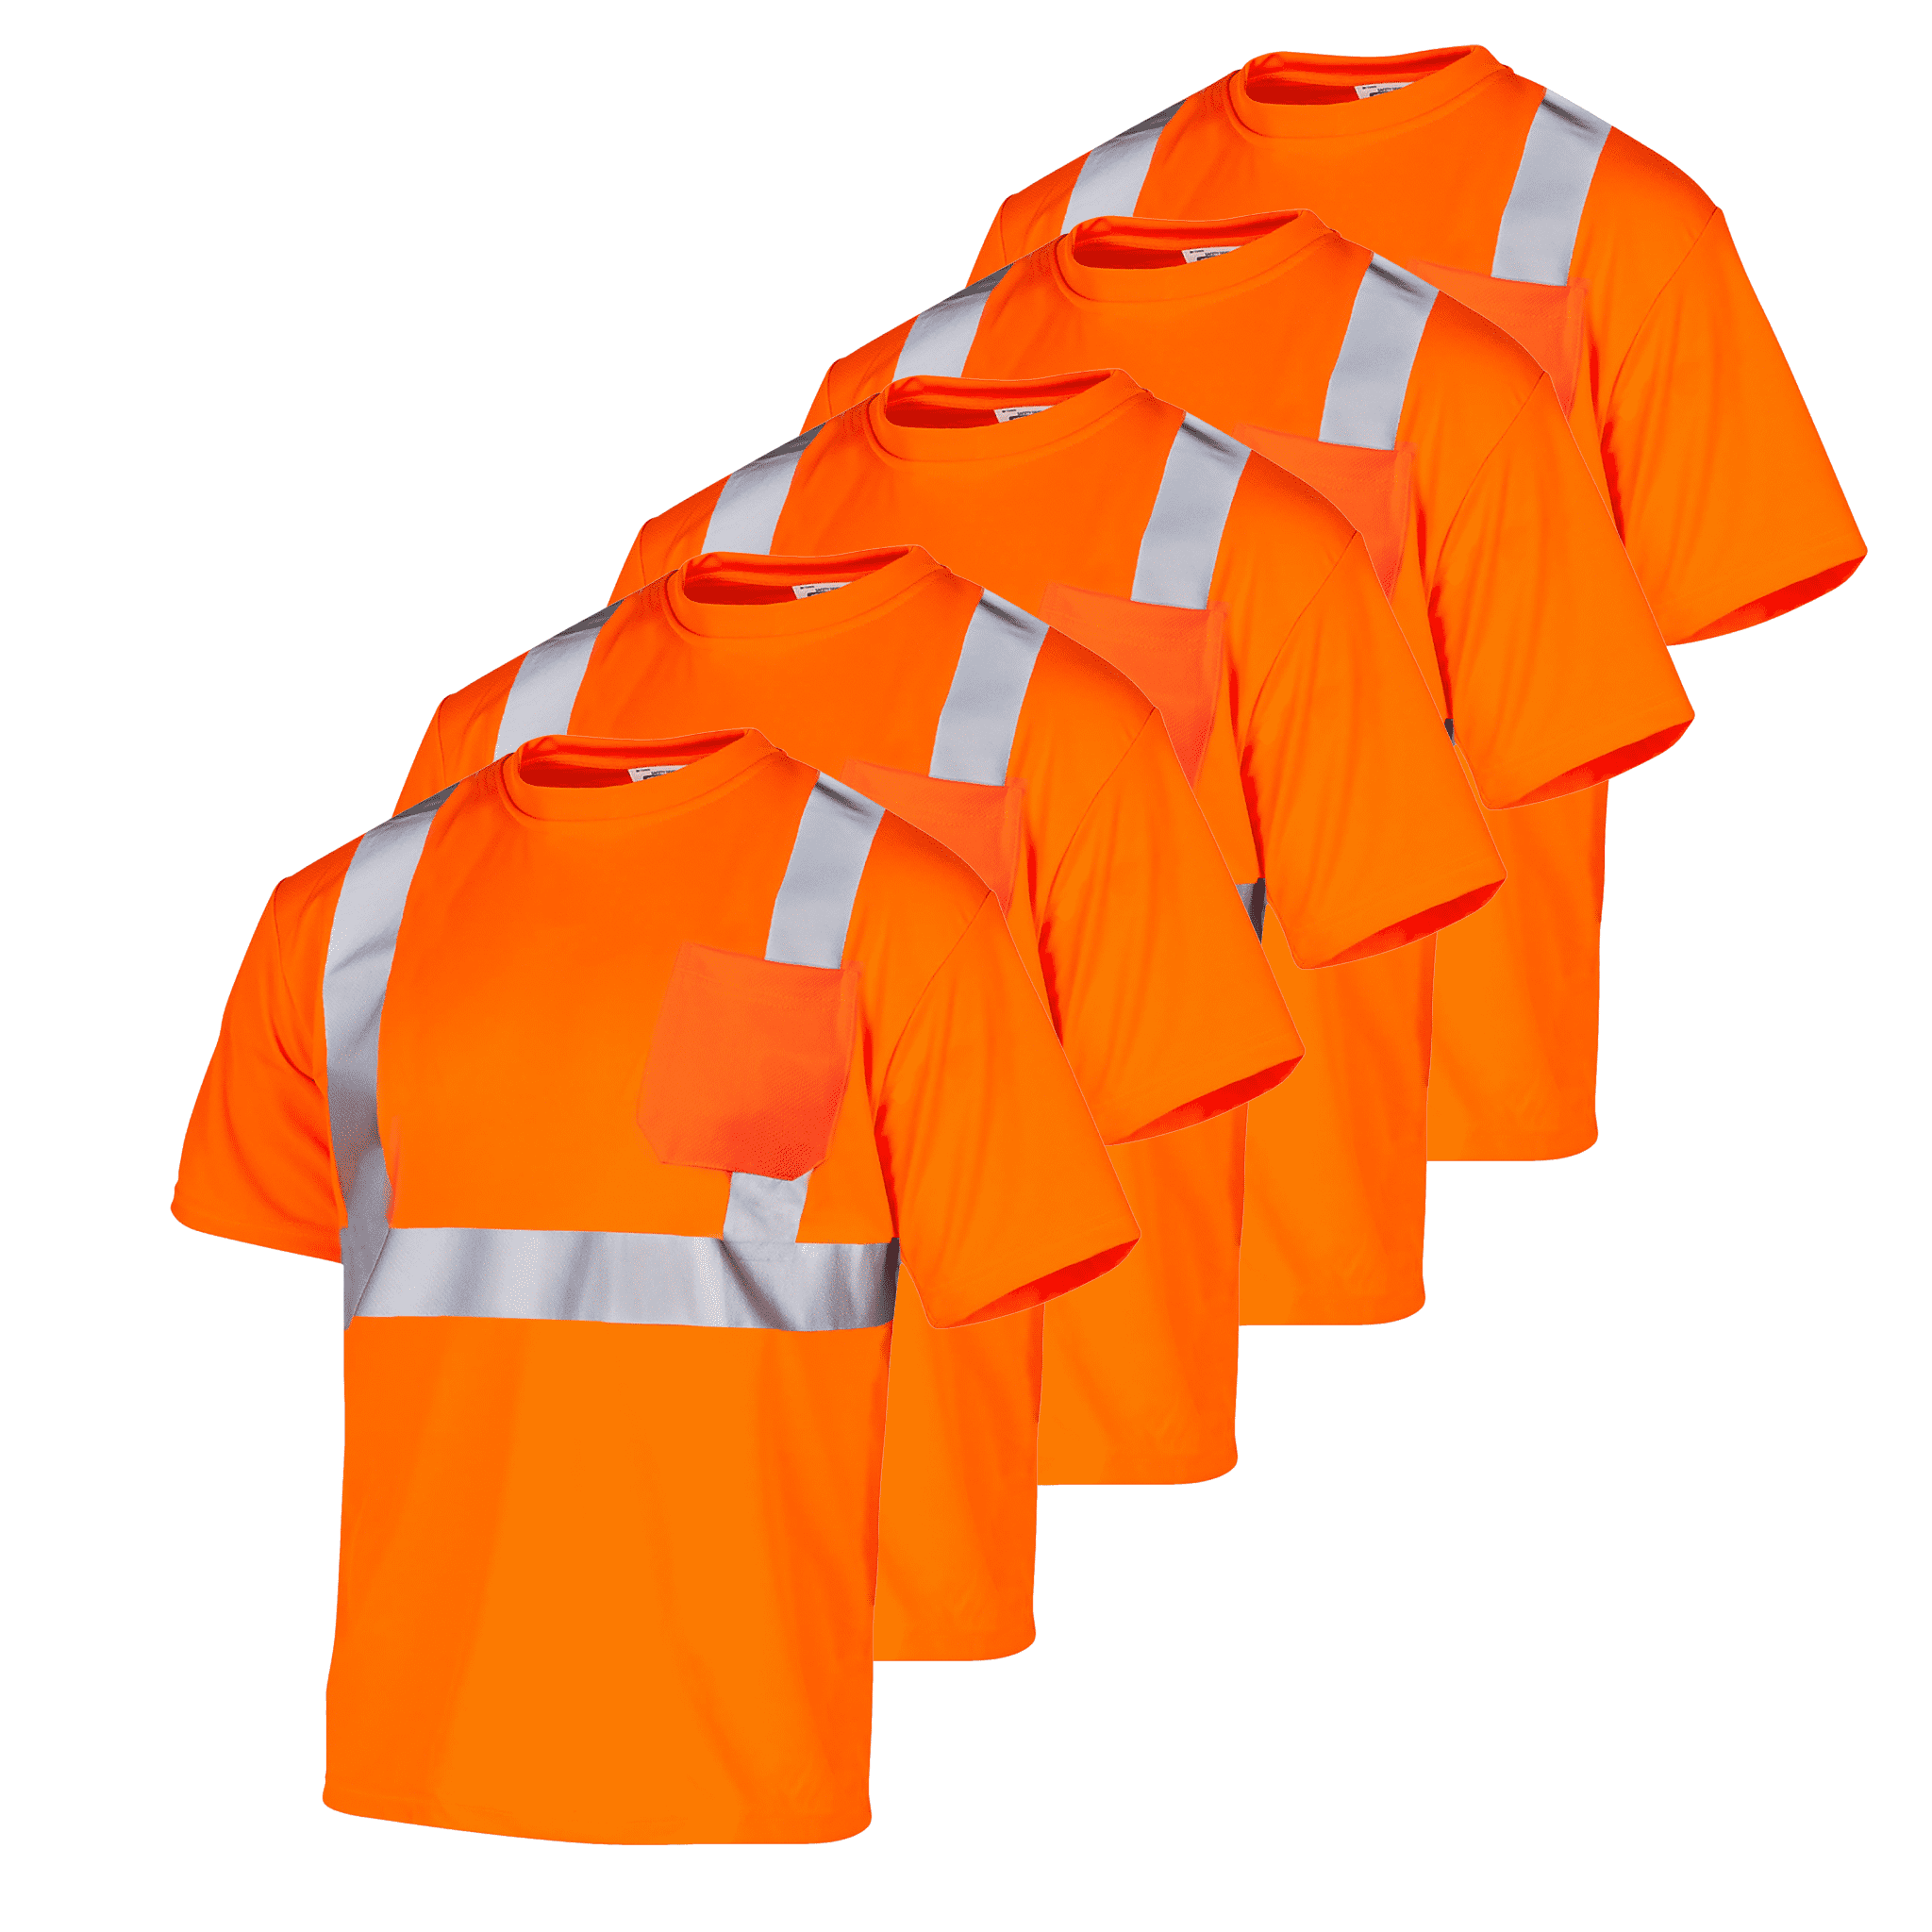 JORESTECH Hi-Vis Short Sleeve Safety Shirt, Heat Transfer, ANSI